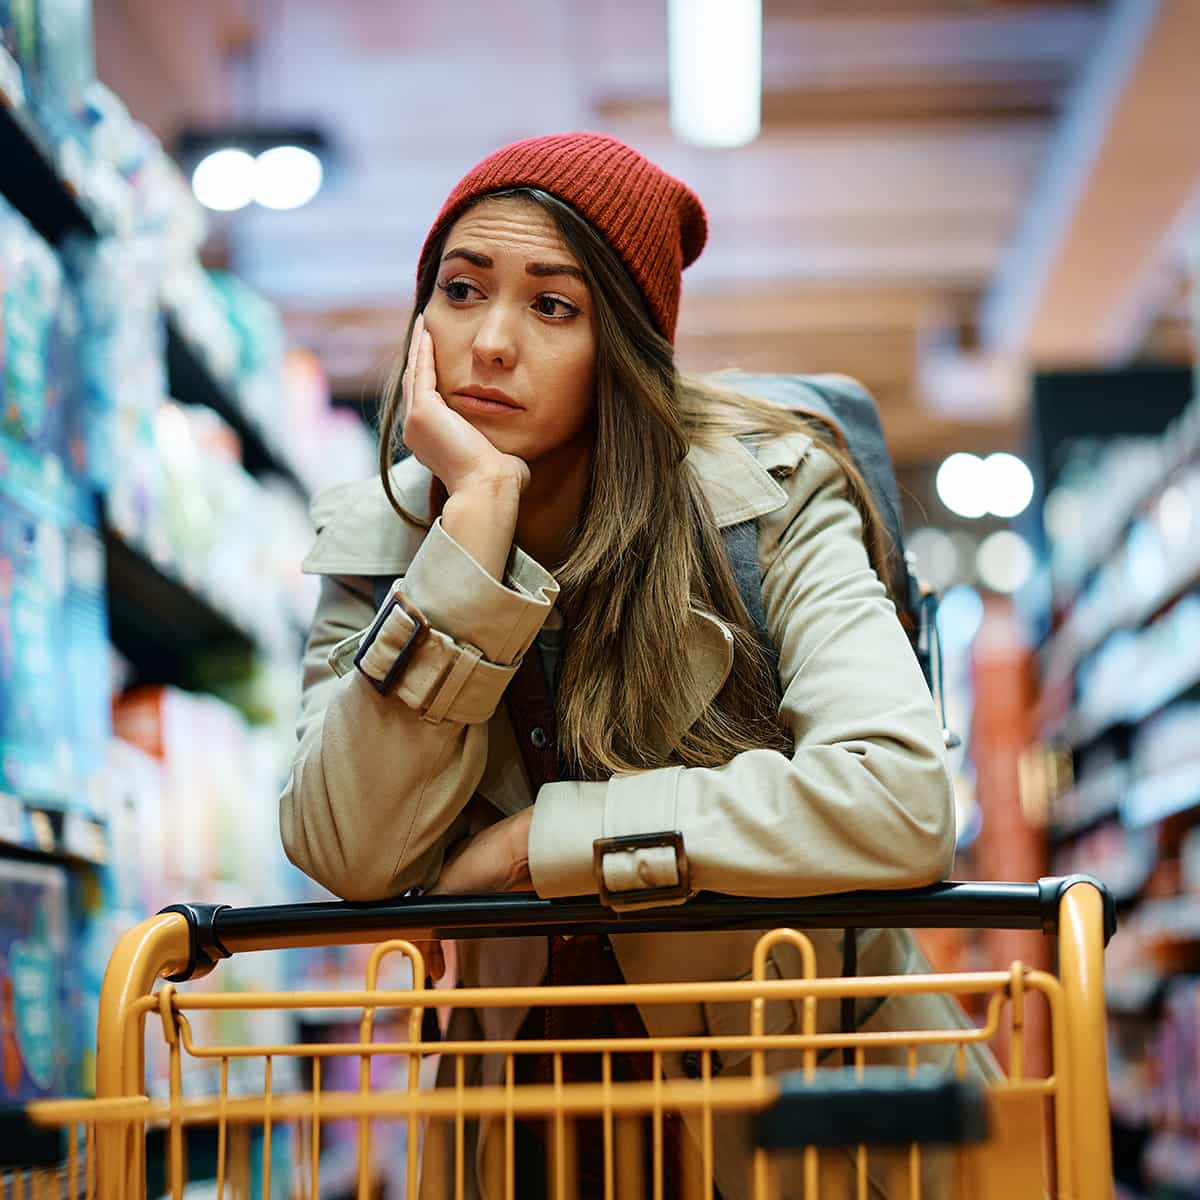 Junge Frau mit leerem Einkaufswagen im Supermarkt blickt bedrückt